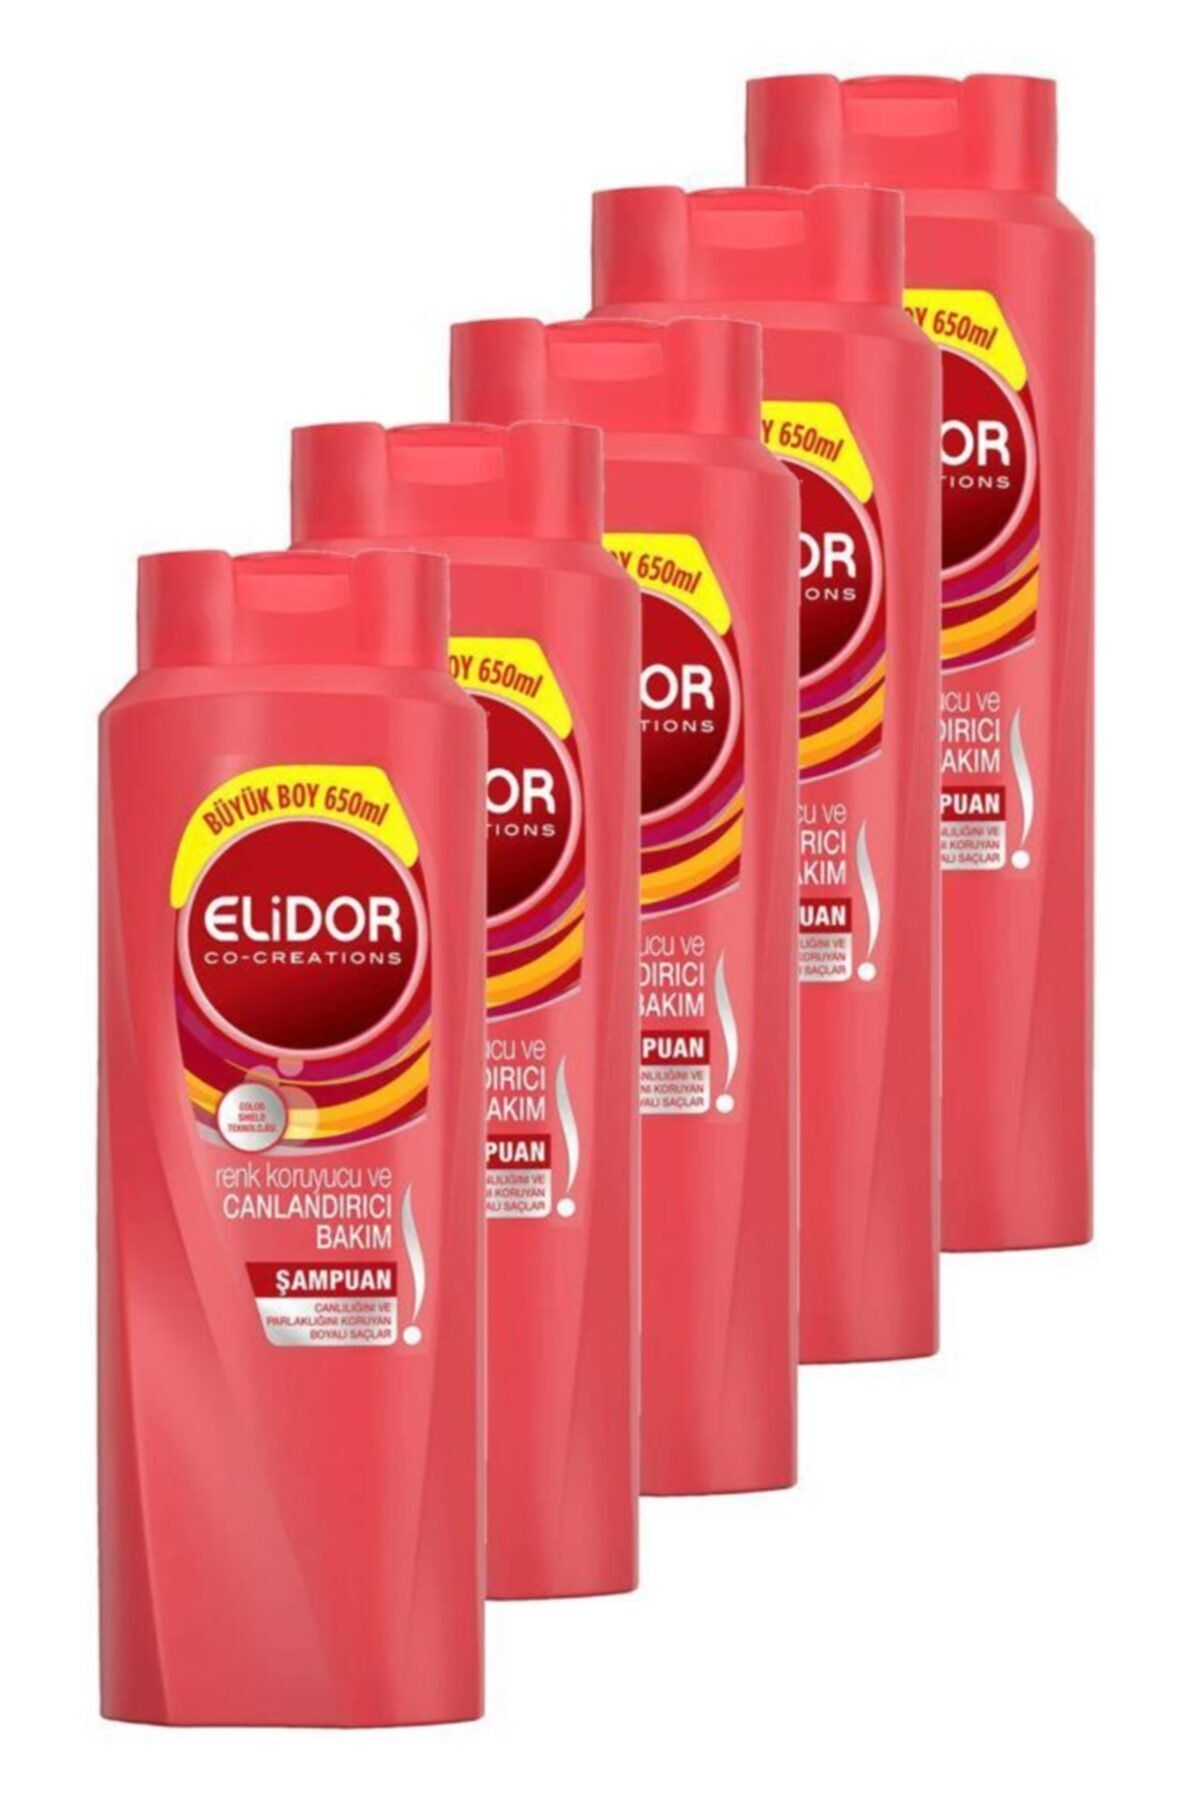 Elidor Renk Koruyucu Ve Canlandırıcı Bakım Şampuan 650ml  Beşli Paket